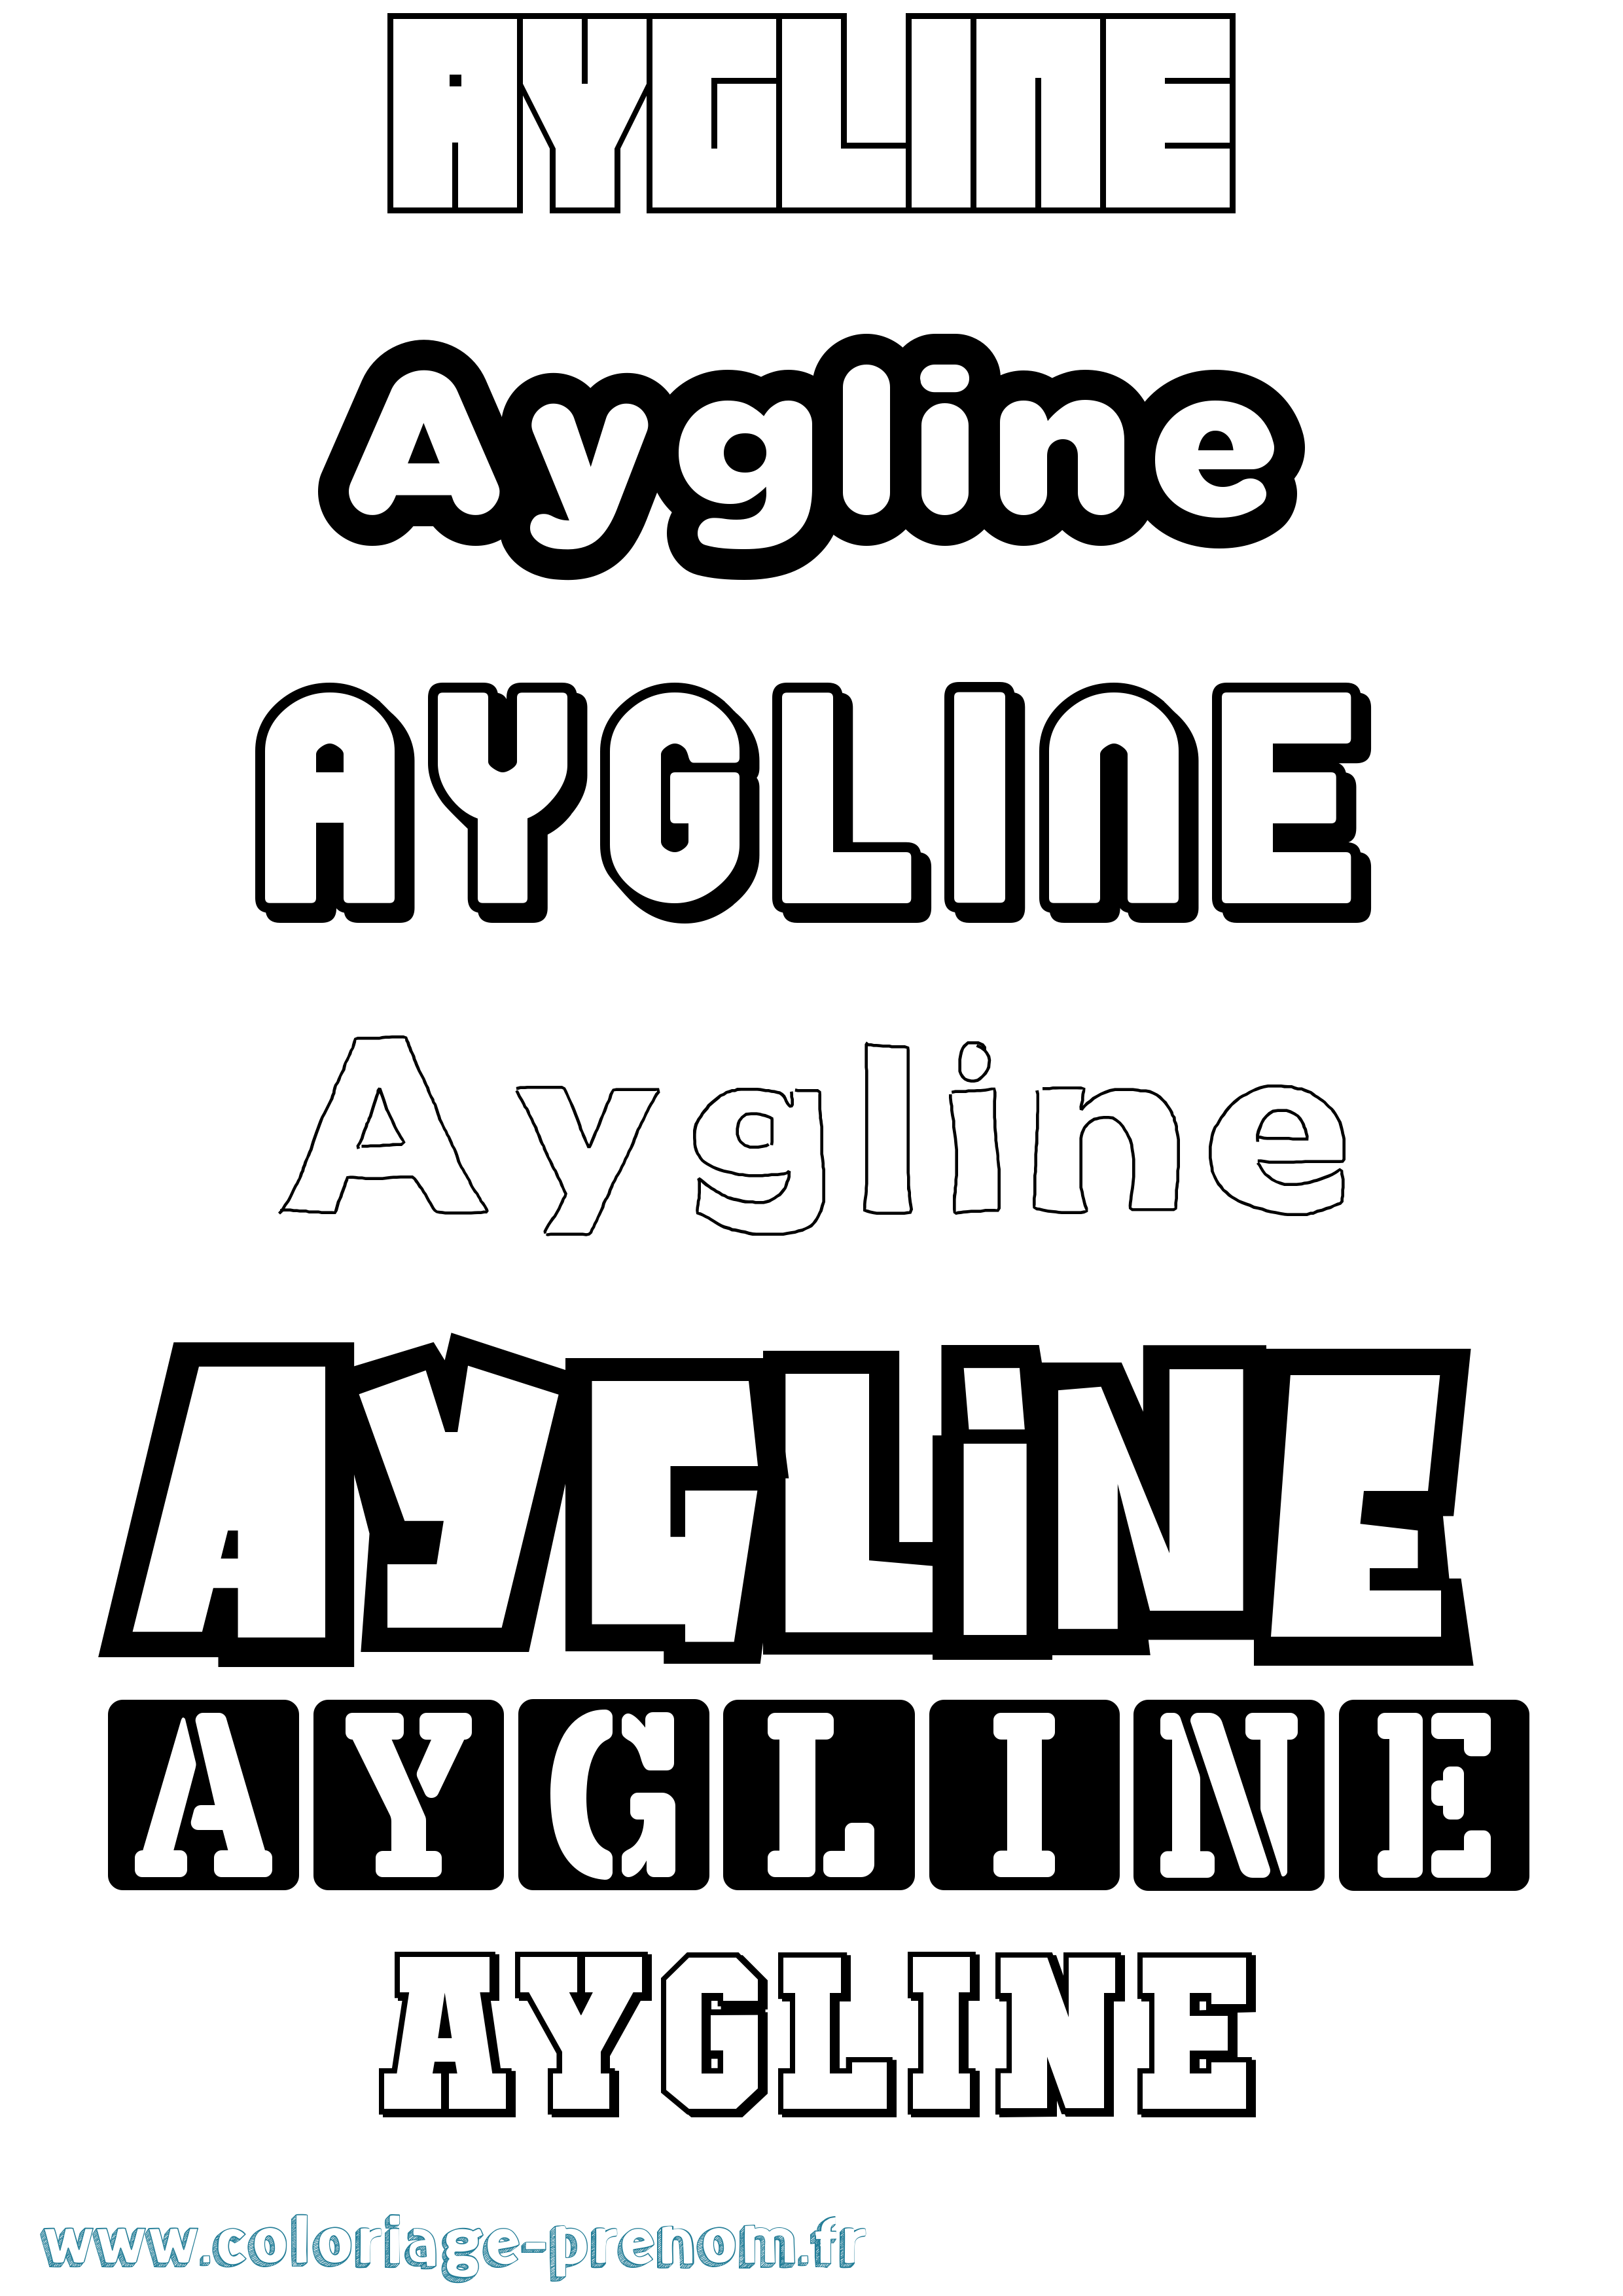 Coloriage prénom Aygline Simple